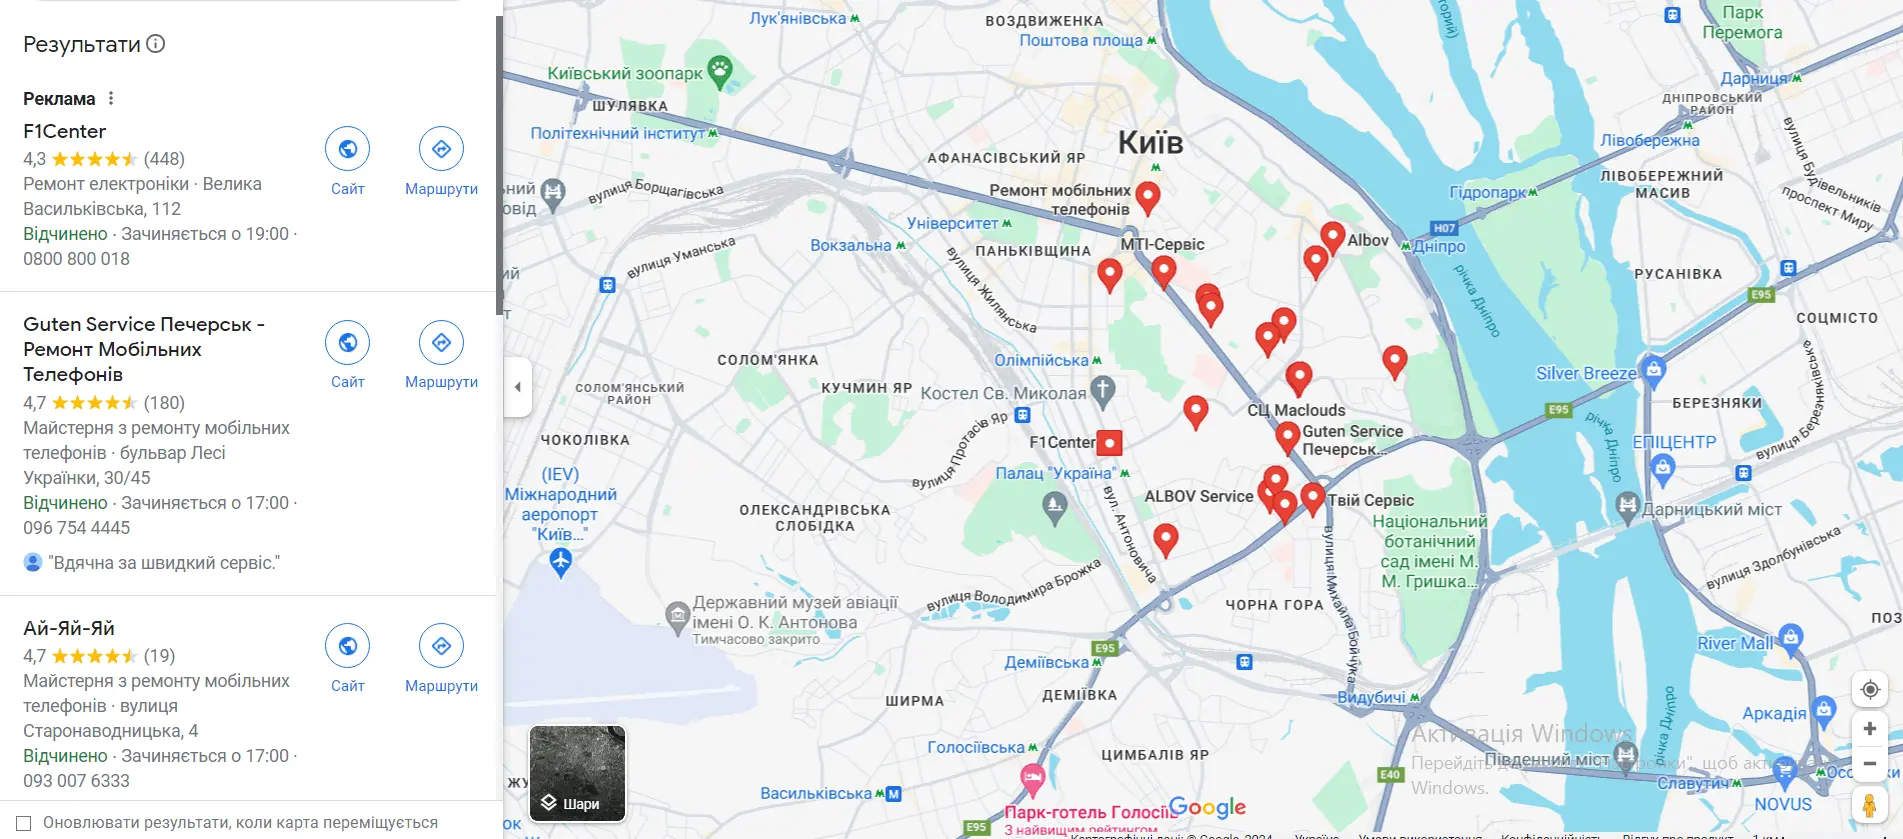 google-maps-ua.webp (154 KB)